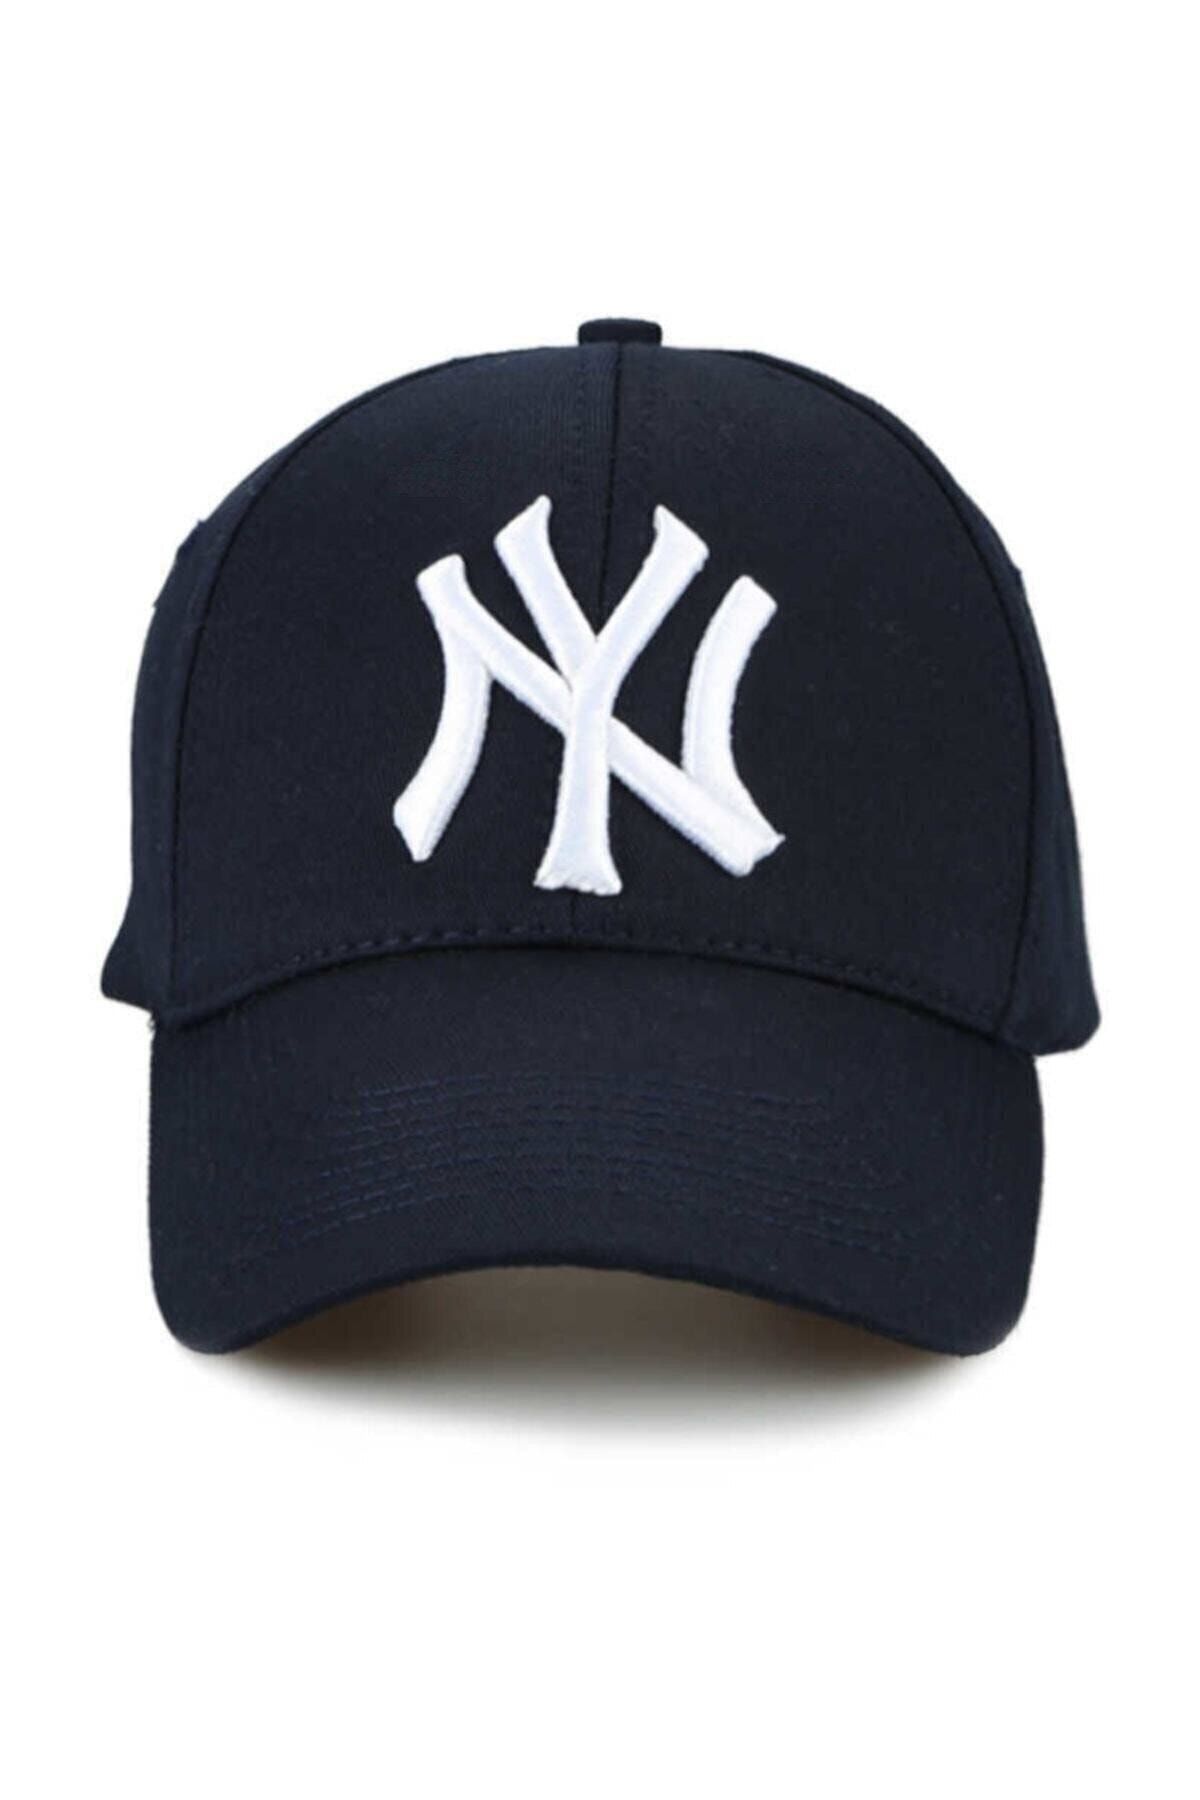 NuxFah Ny New York Şapka Unisex Lacivert Şapka